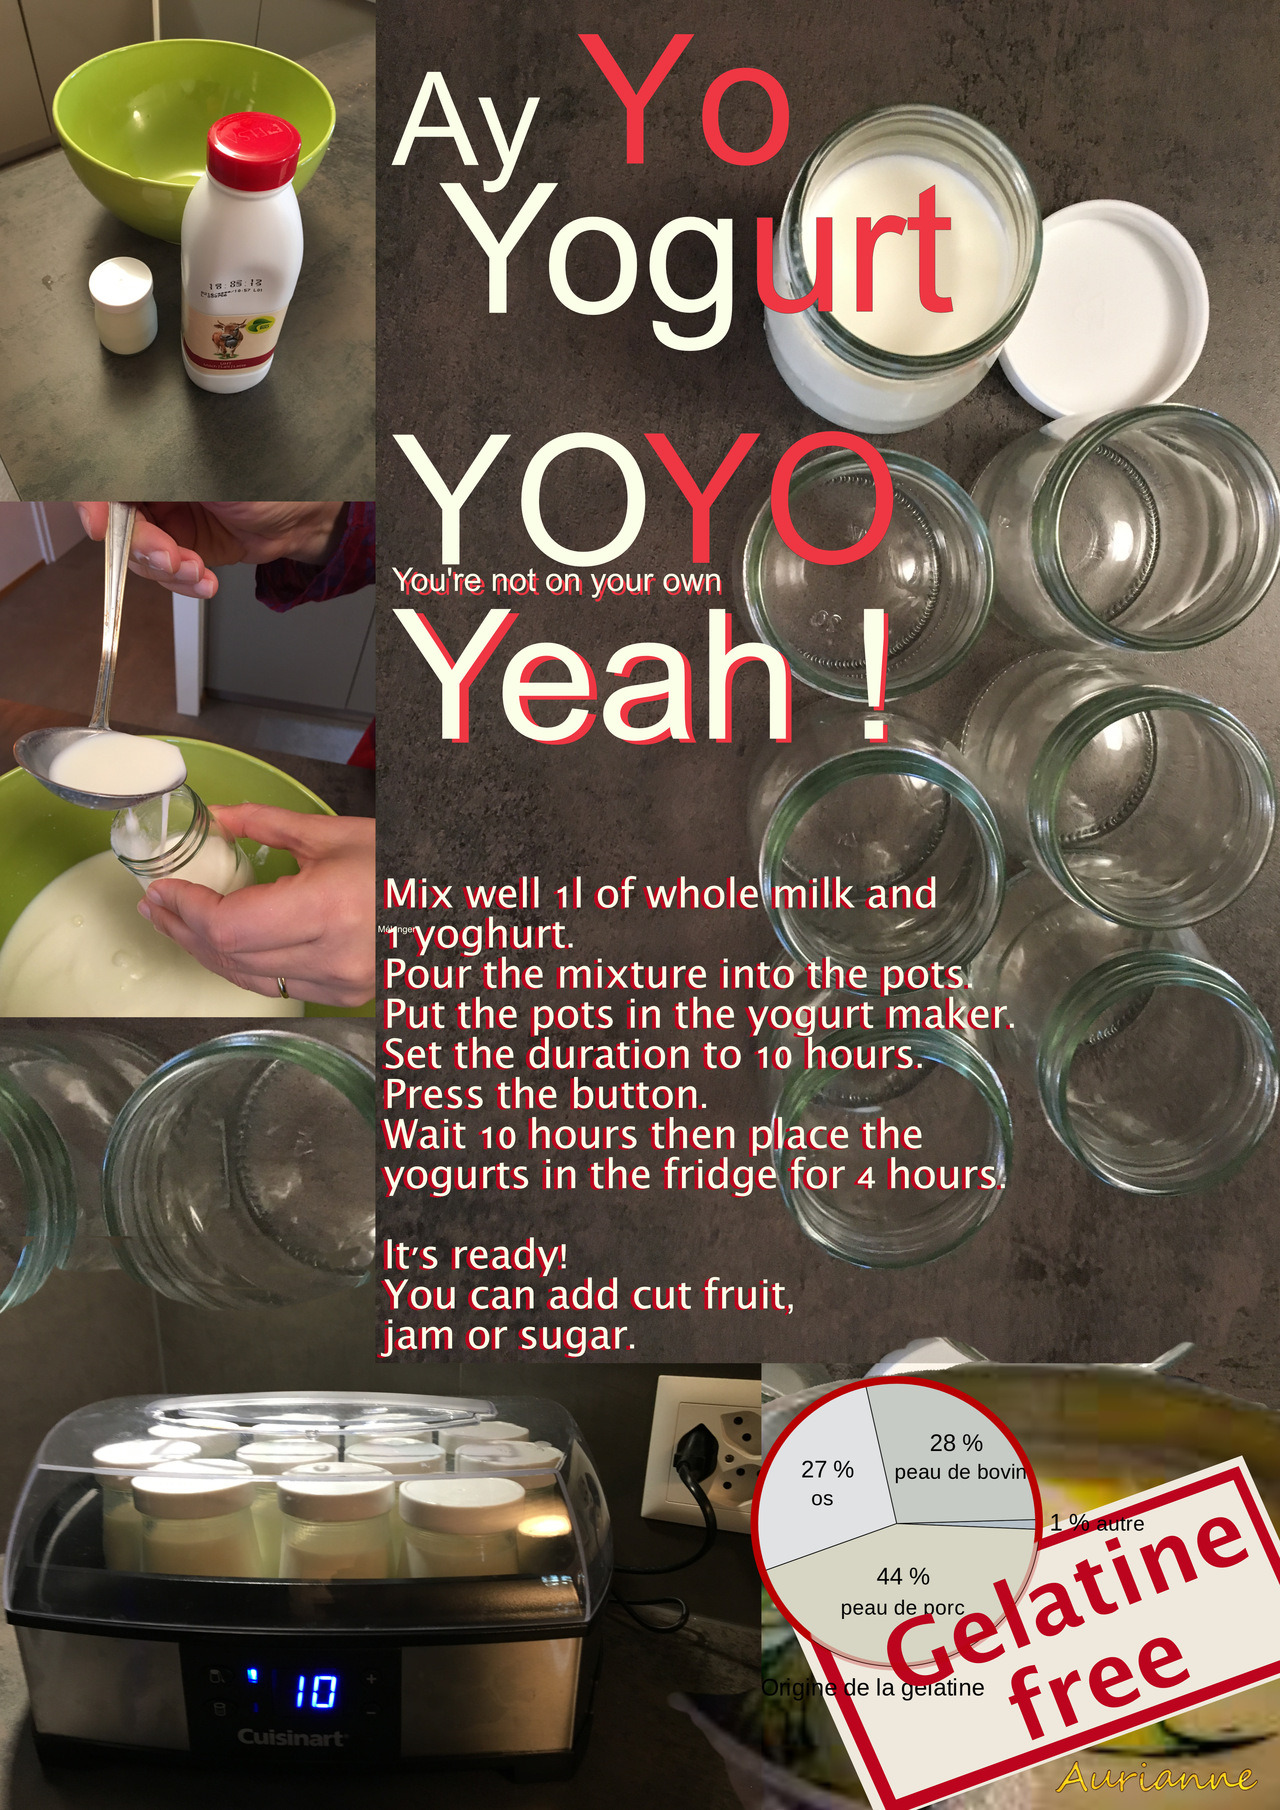 Ay Yo Yogurt YOYO Yeah!